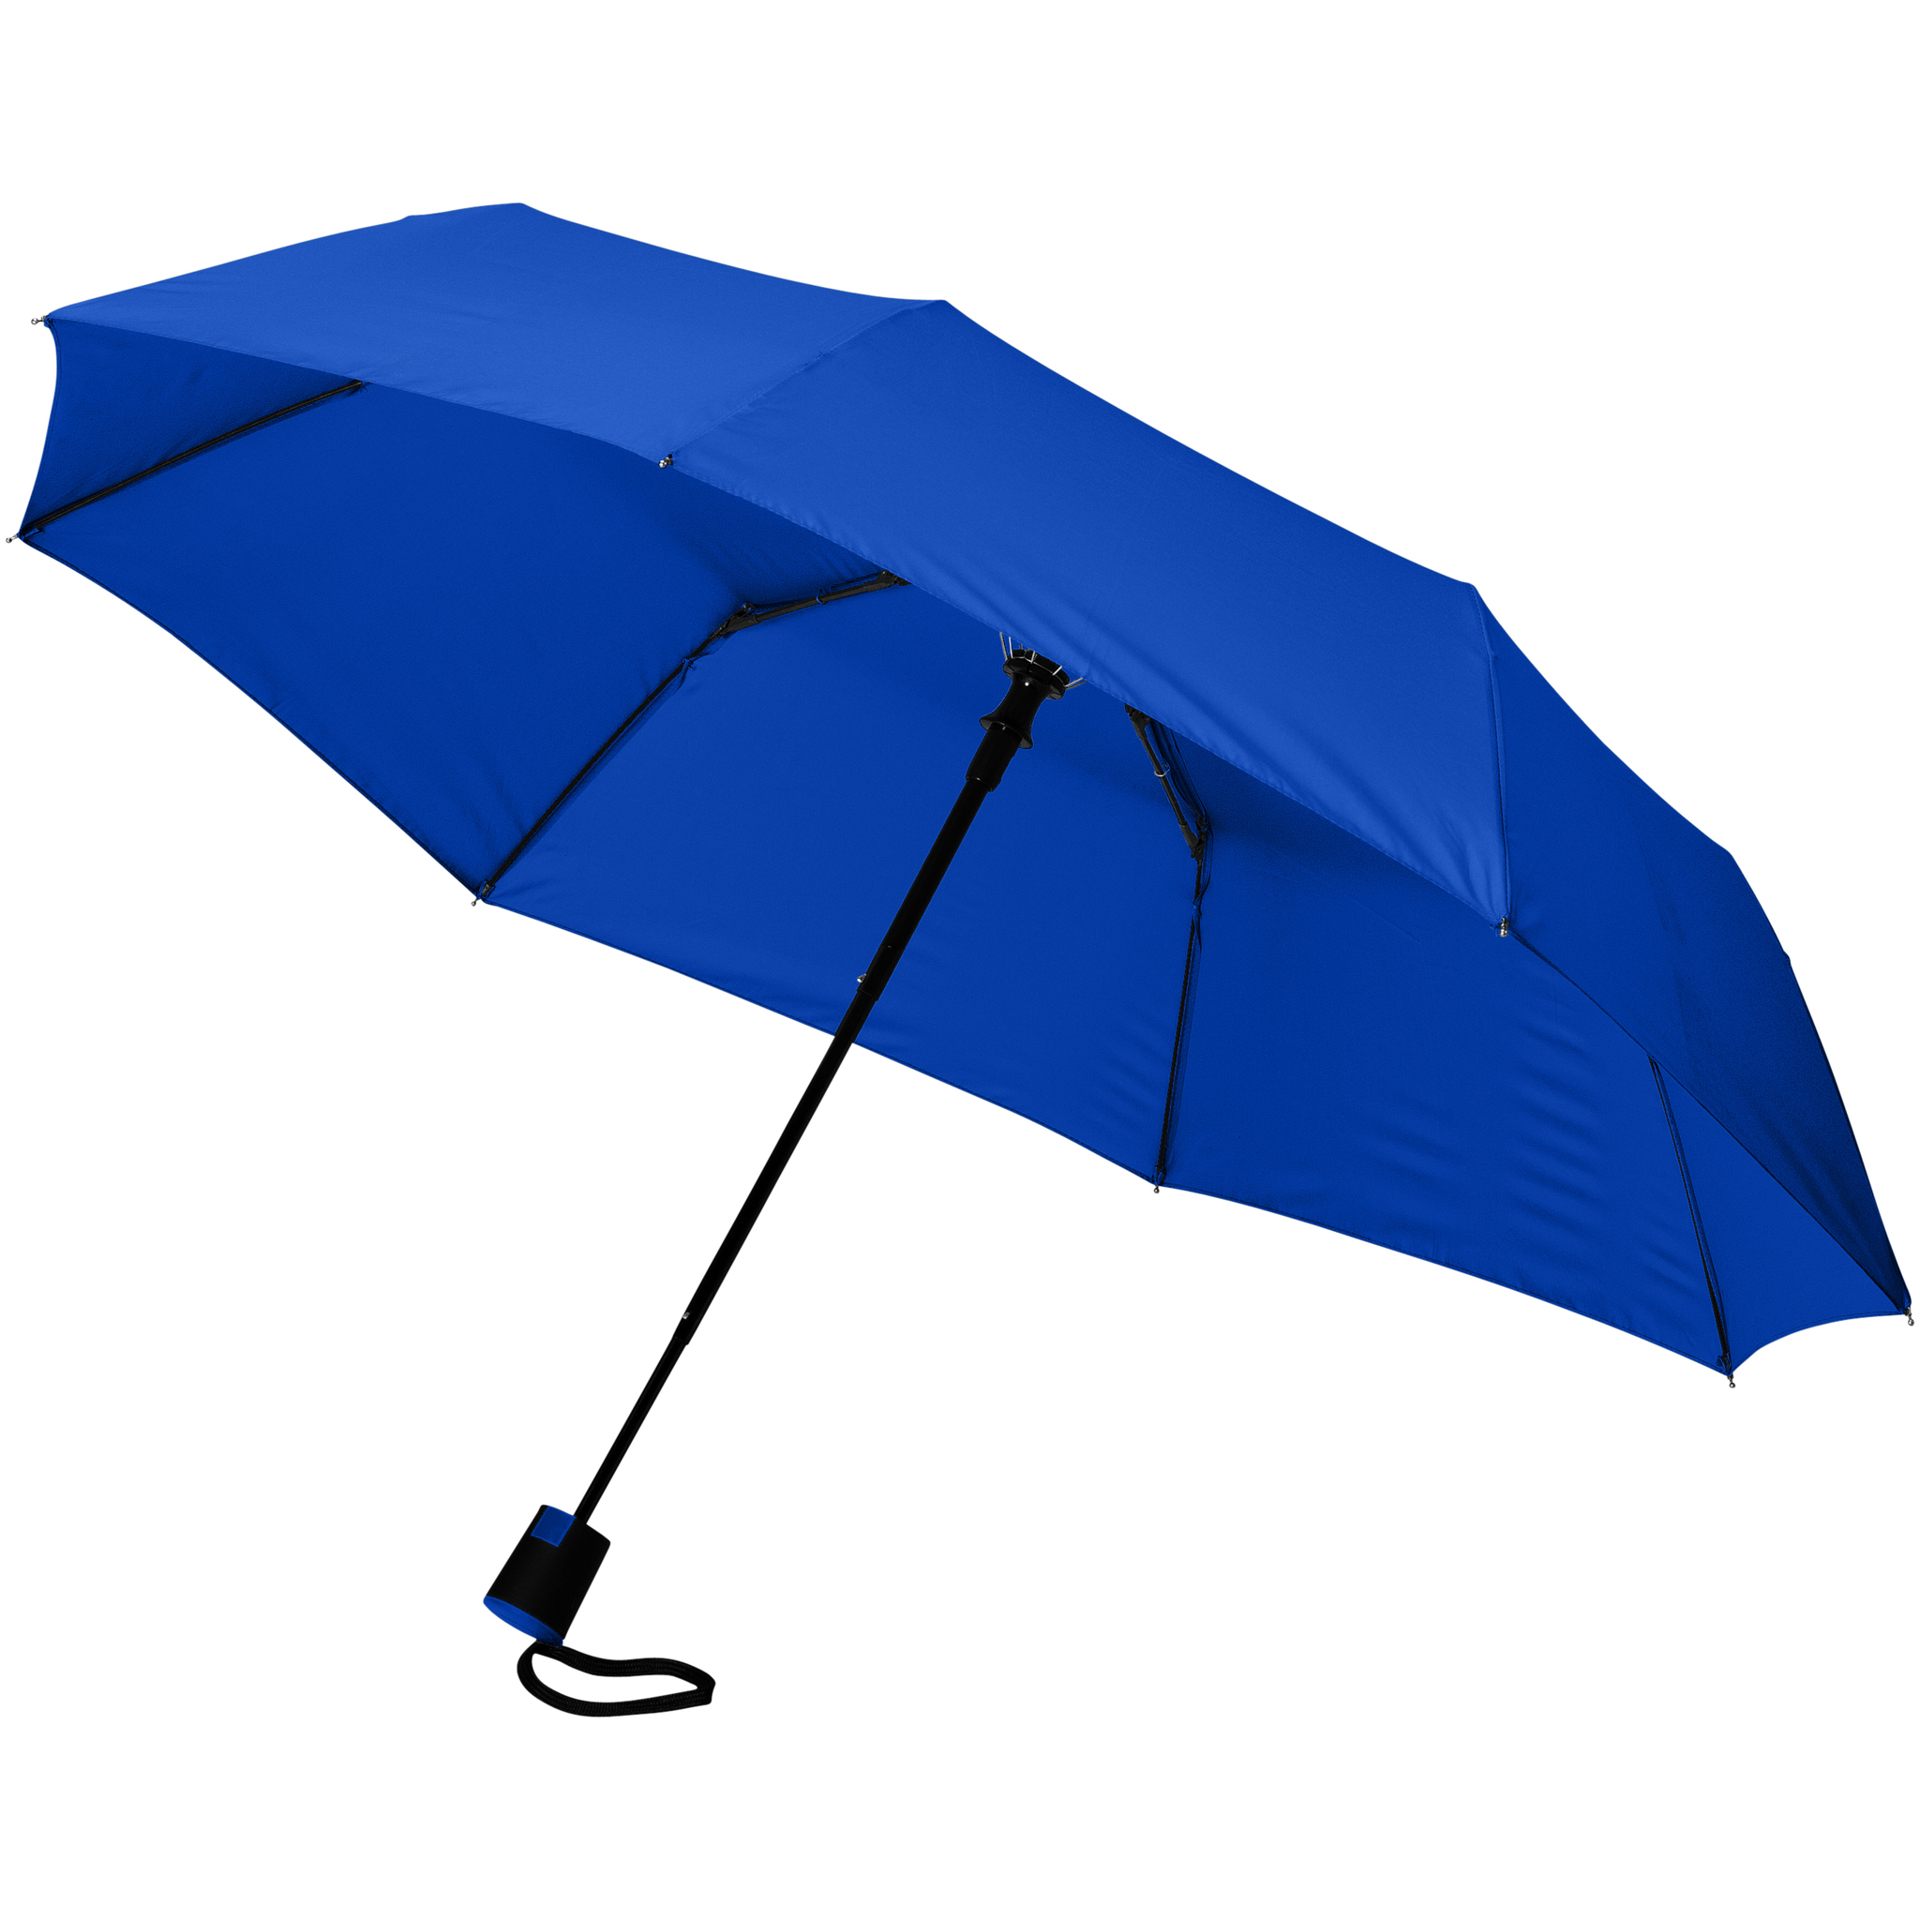 21" foldable auto open umbrella in blue